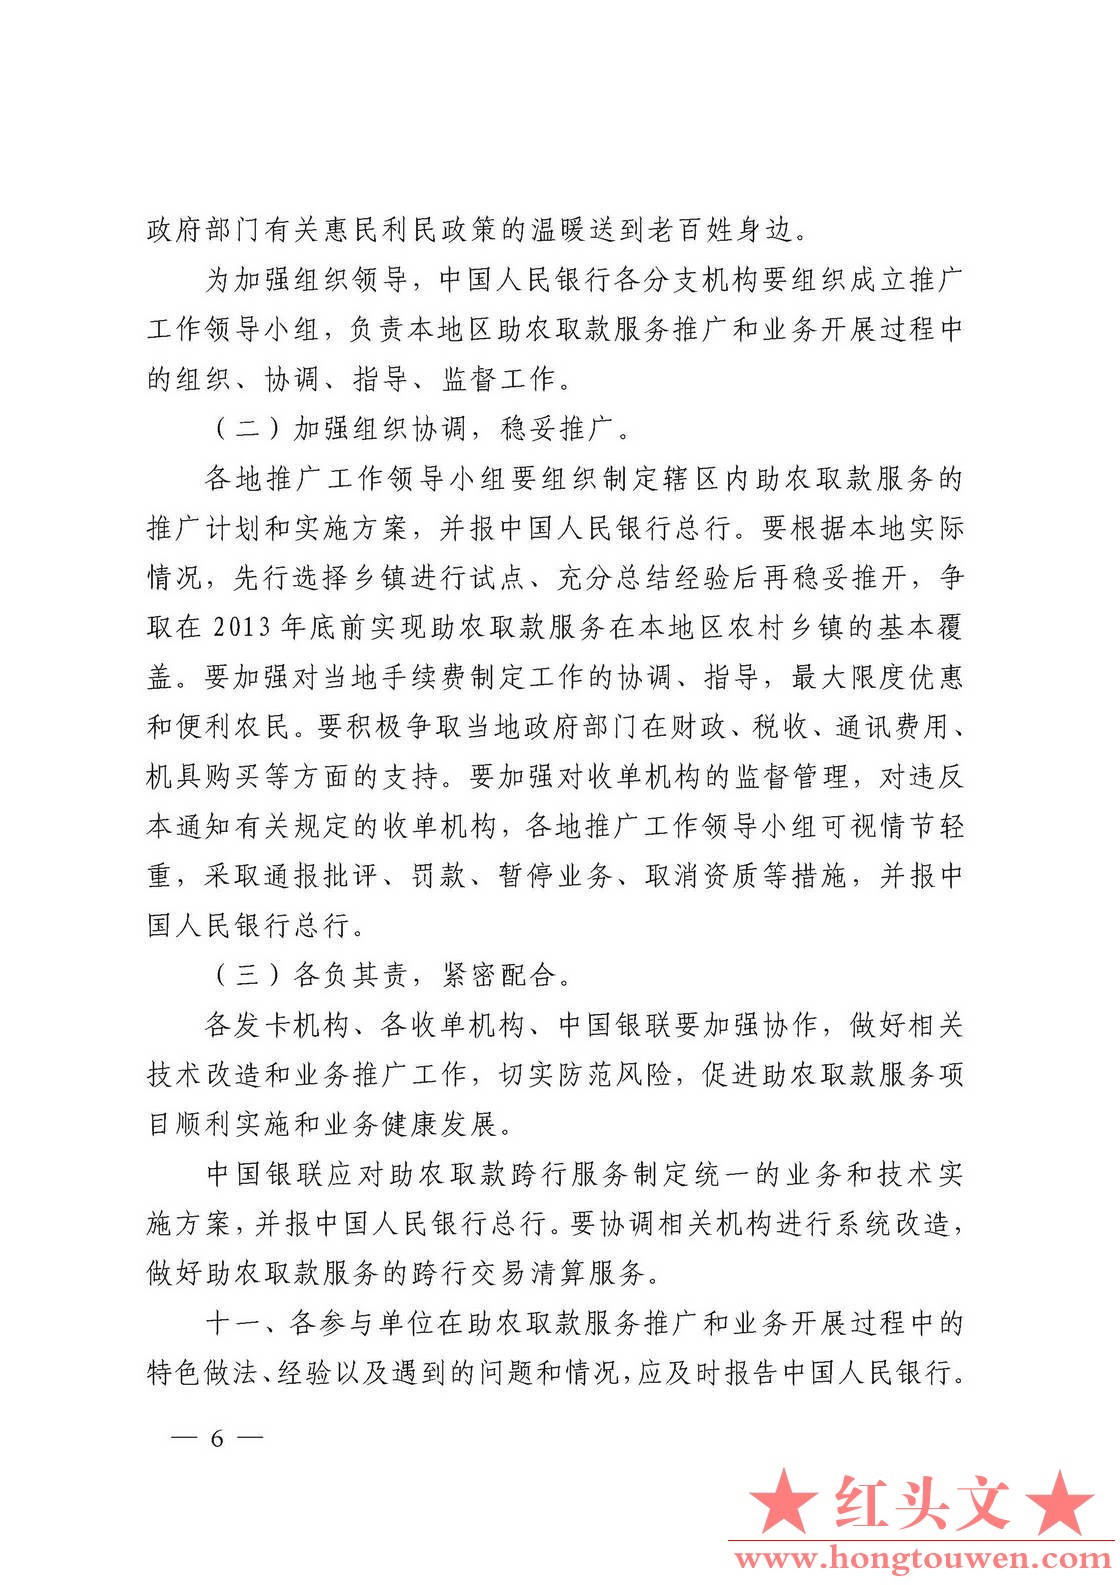 银发[2011]177号-中国人民银行关于推广银行卡助农取款服务的通知_页面_06.jpg.jpg